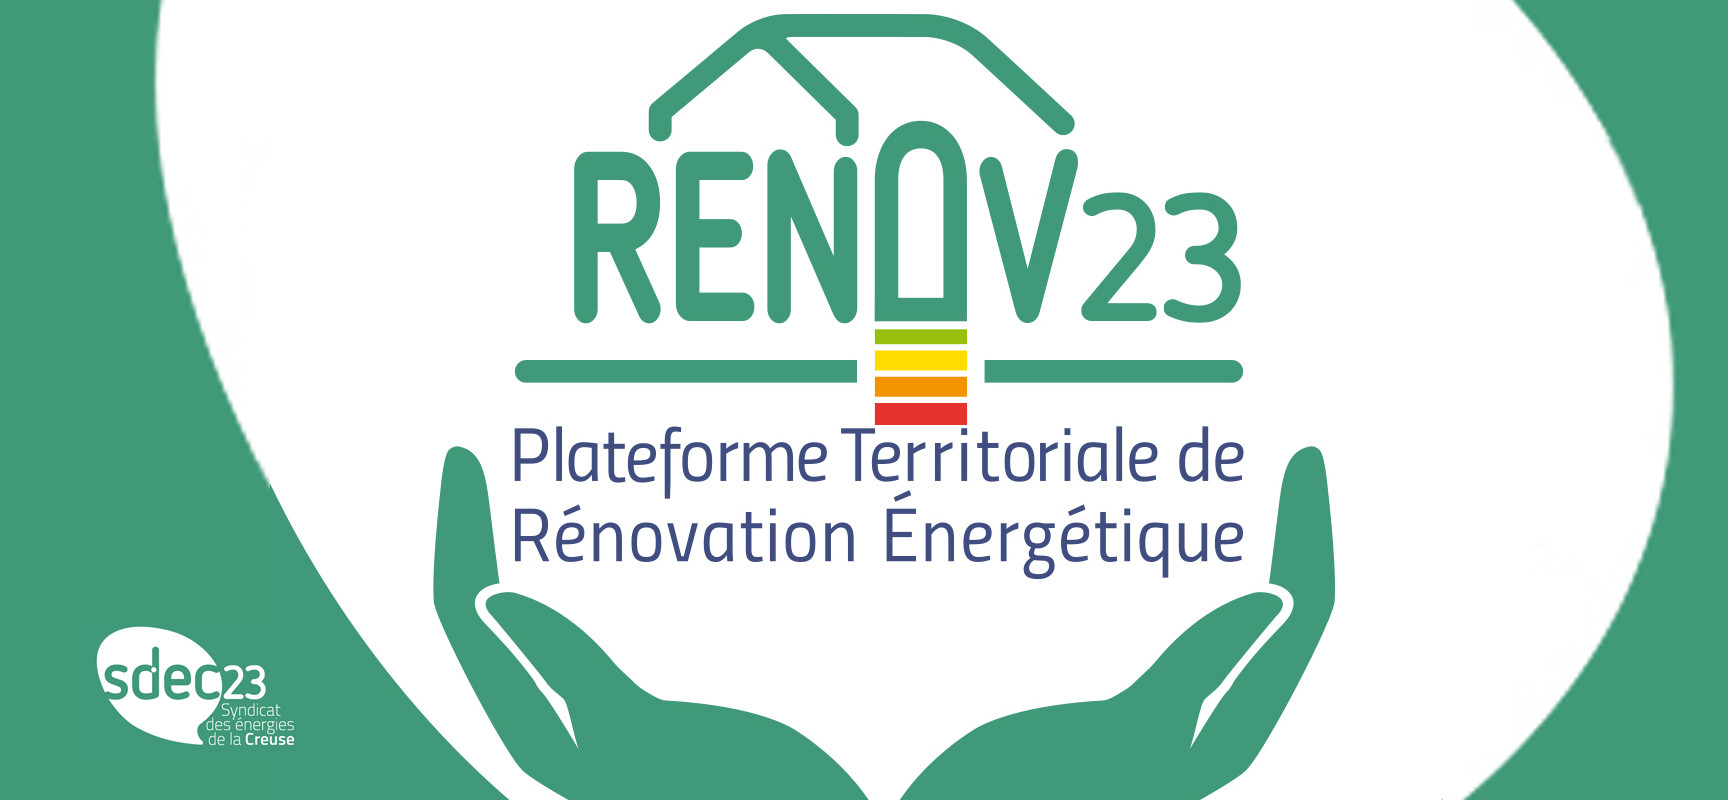 Rendez-vous Renov’23 pour vous aider à monter votre dossier de rénovation énergétique – Avril 2023